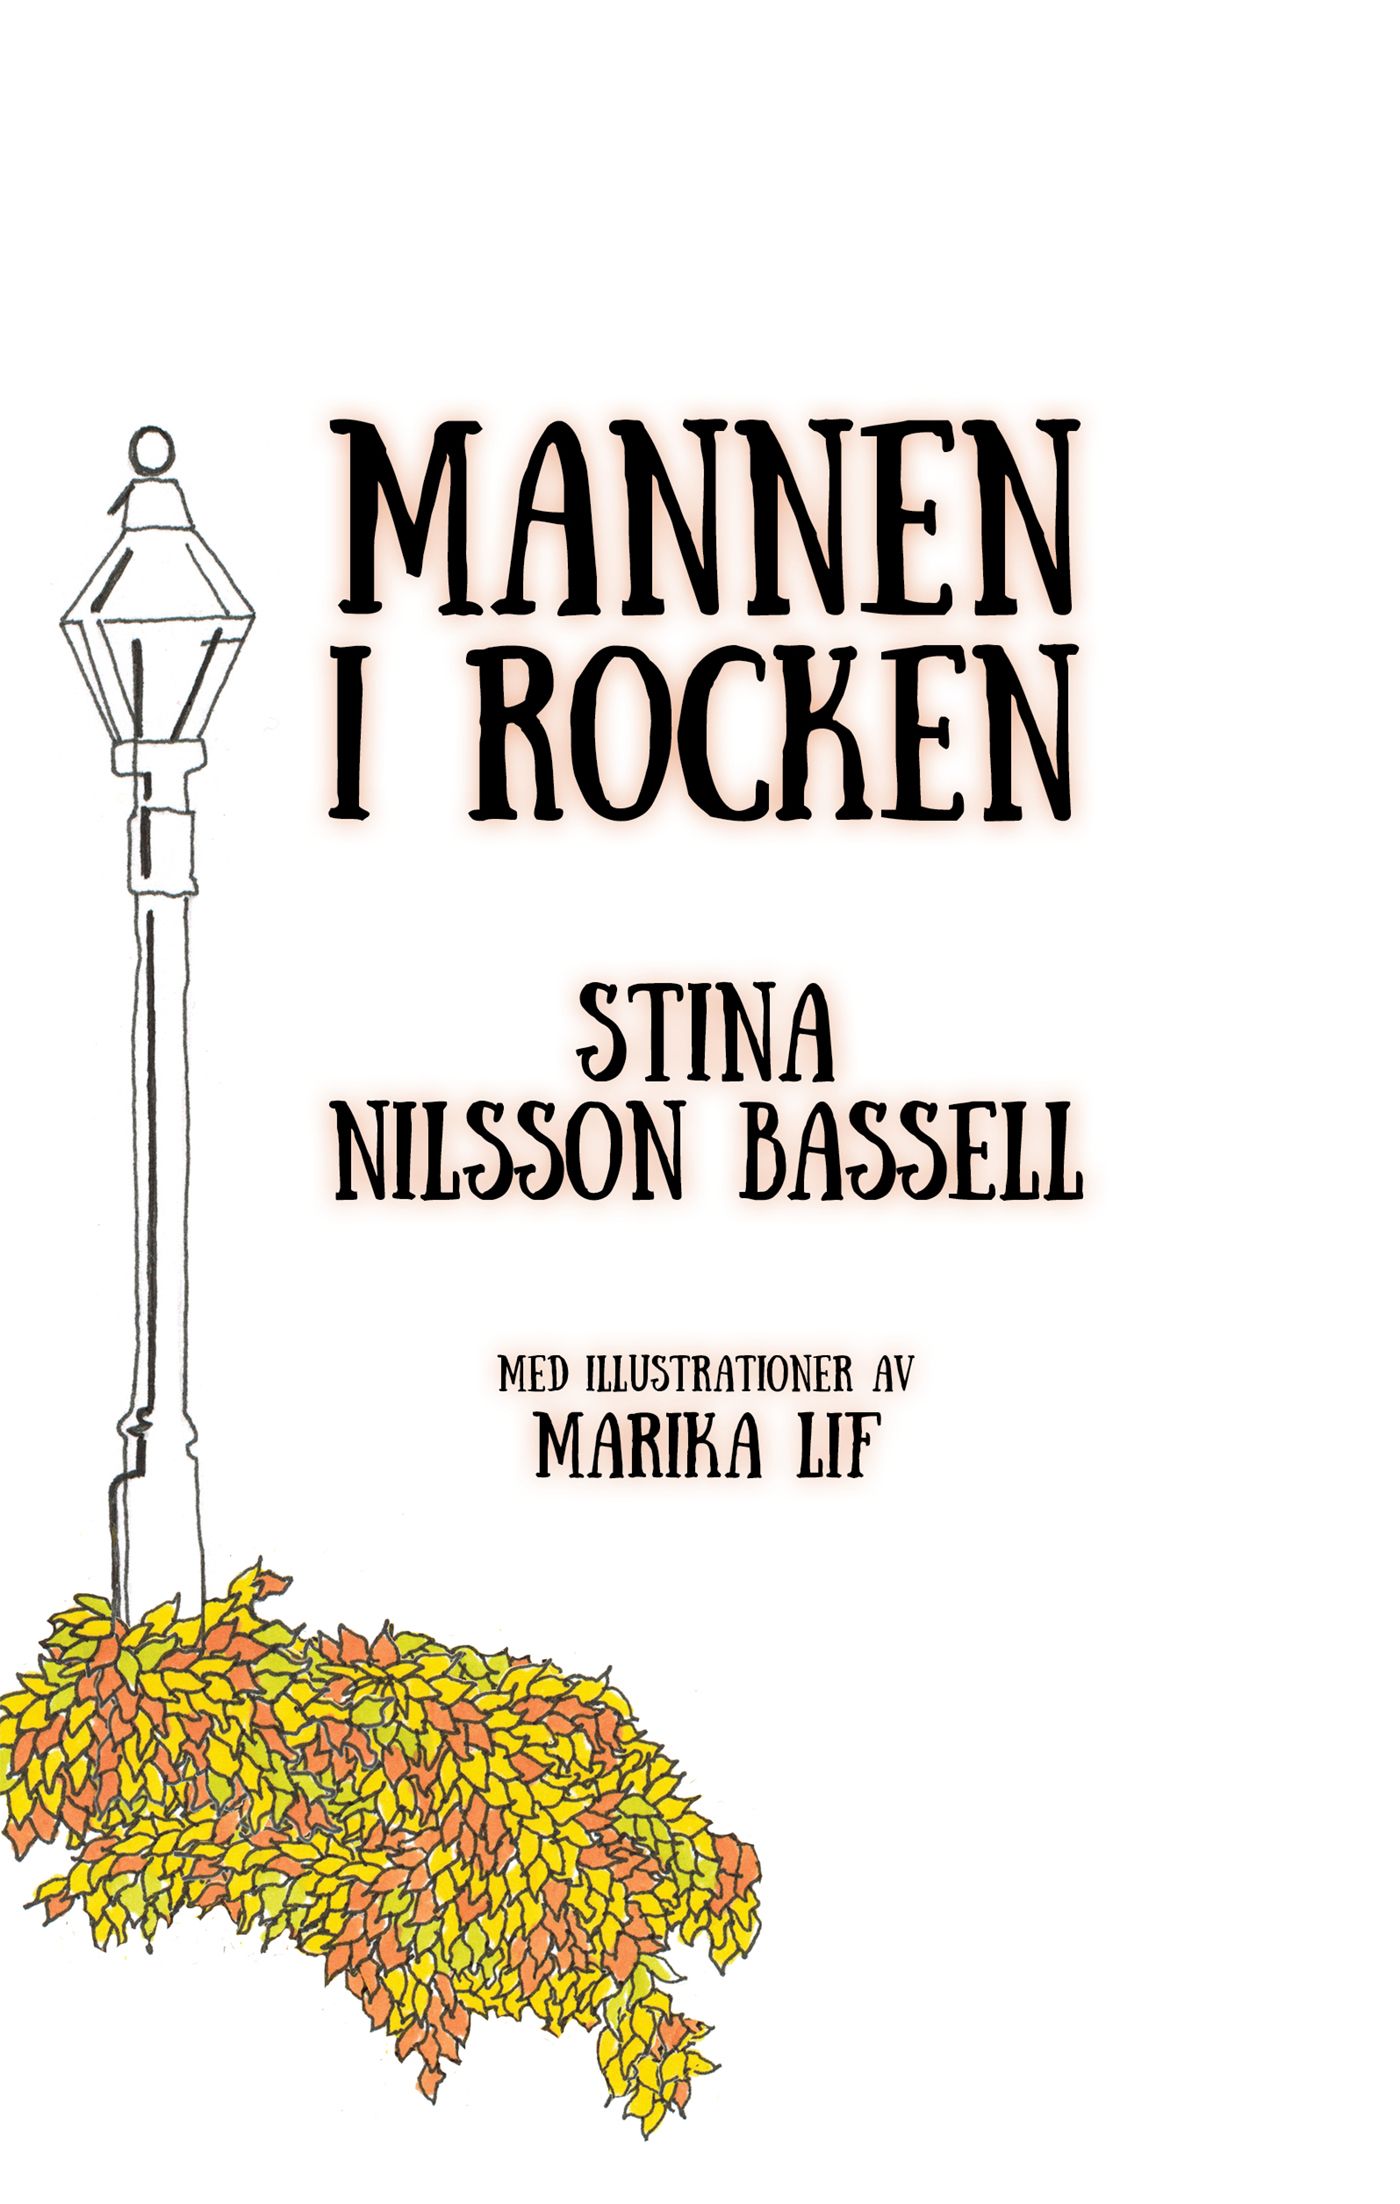 Mannen i rocken, e-bog af Stina Nilsson Bassell